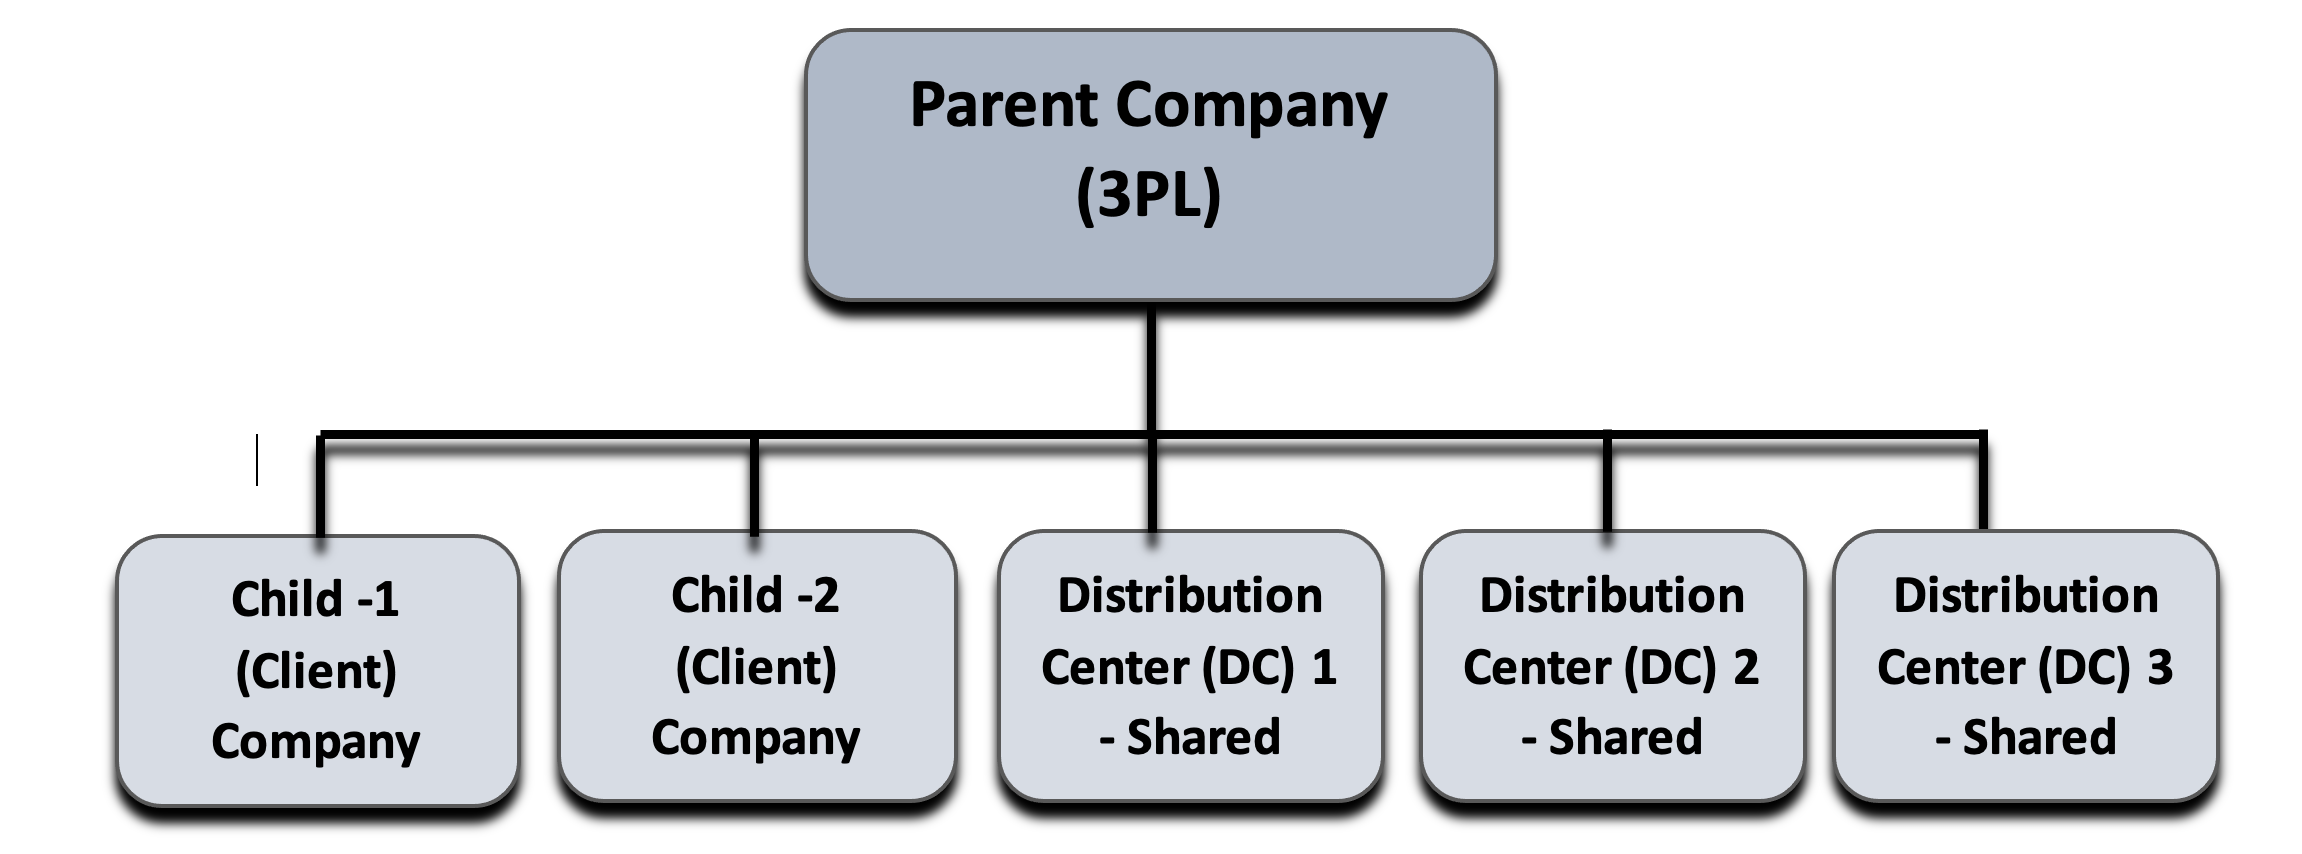 Parent Compnay Hierarchy